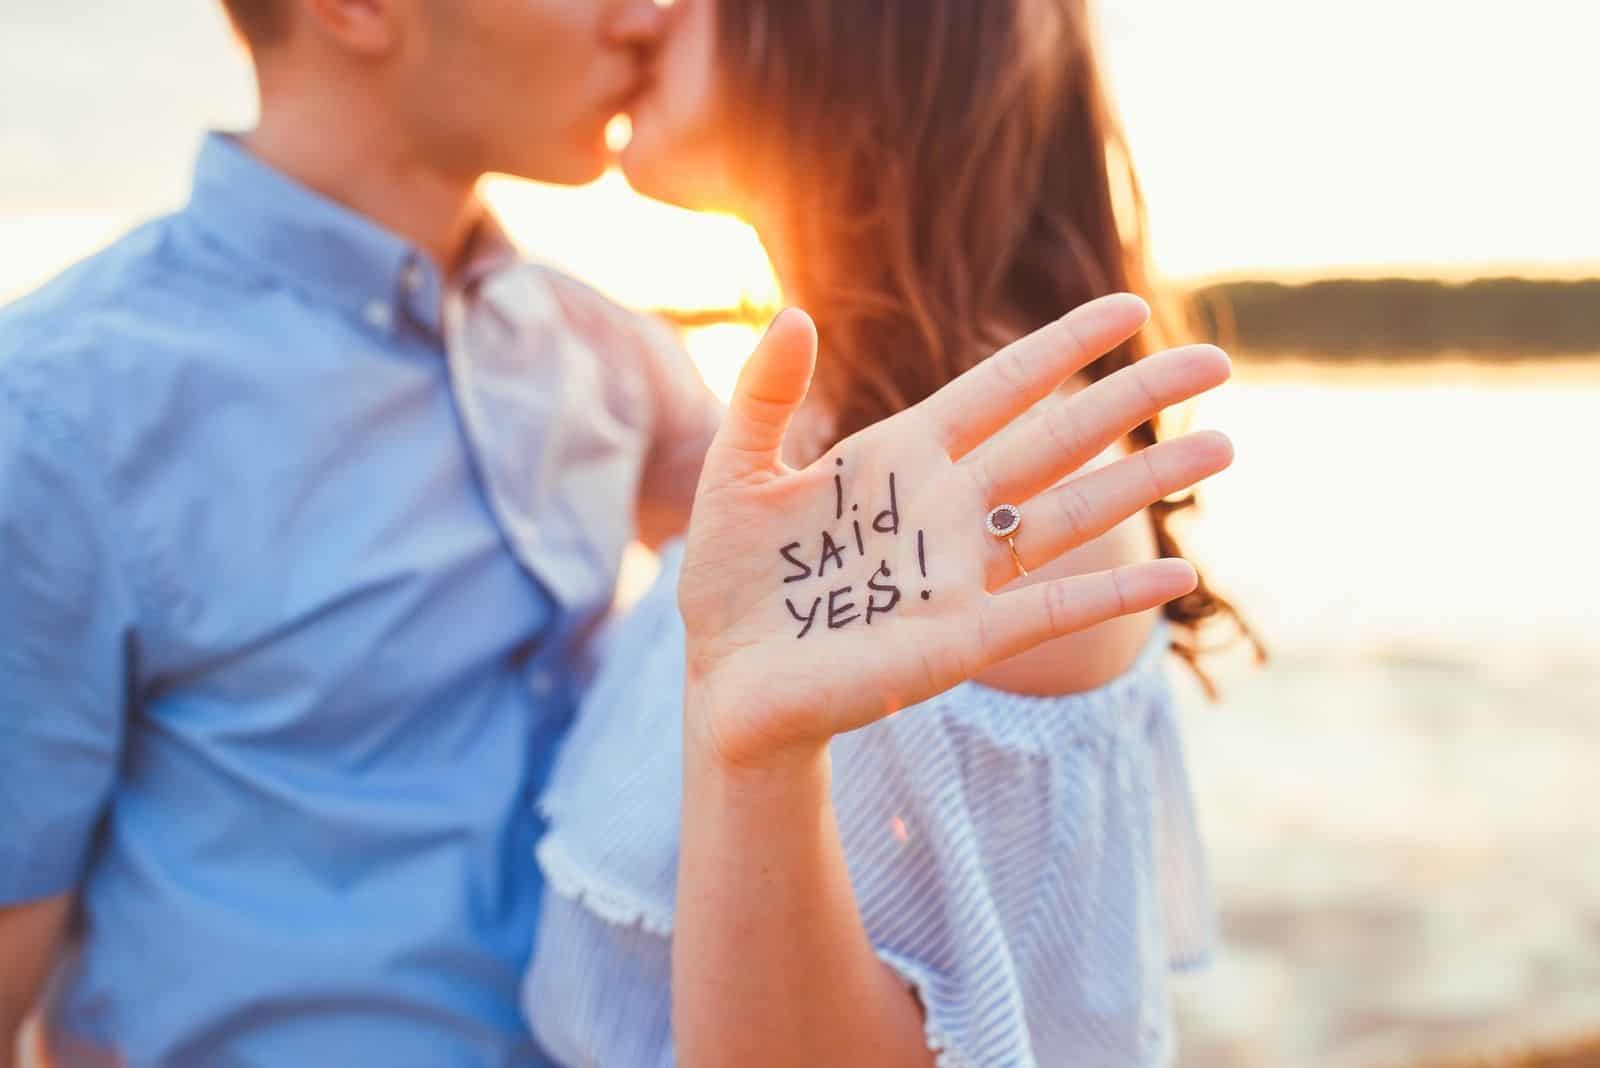 Vorschlag am Strand Frau, die ihre Antwort in der Hand zeigt, während sie sich mit ihrem Freund küsst